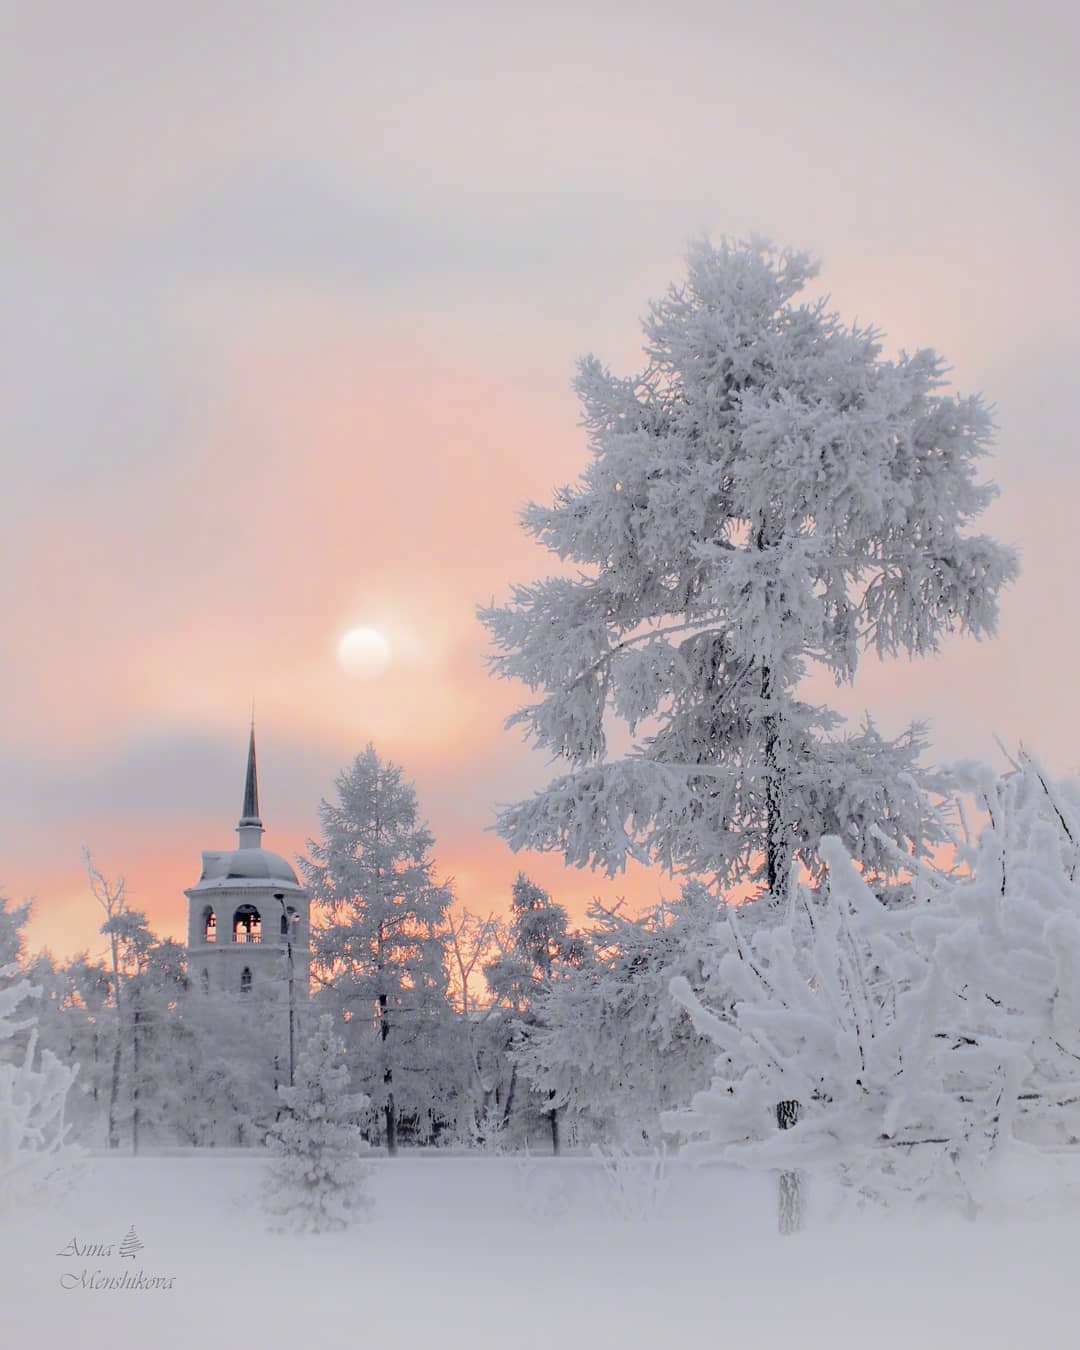 俄罗斯的黄昏雪景,白色雪被涂上了橘粉色